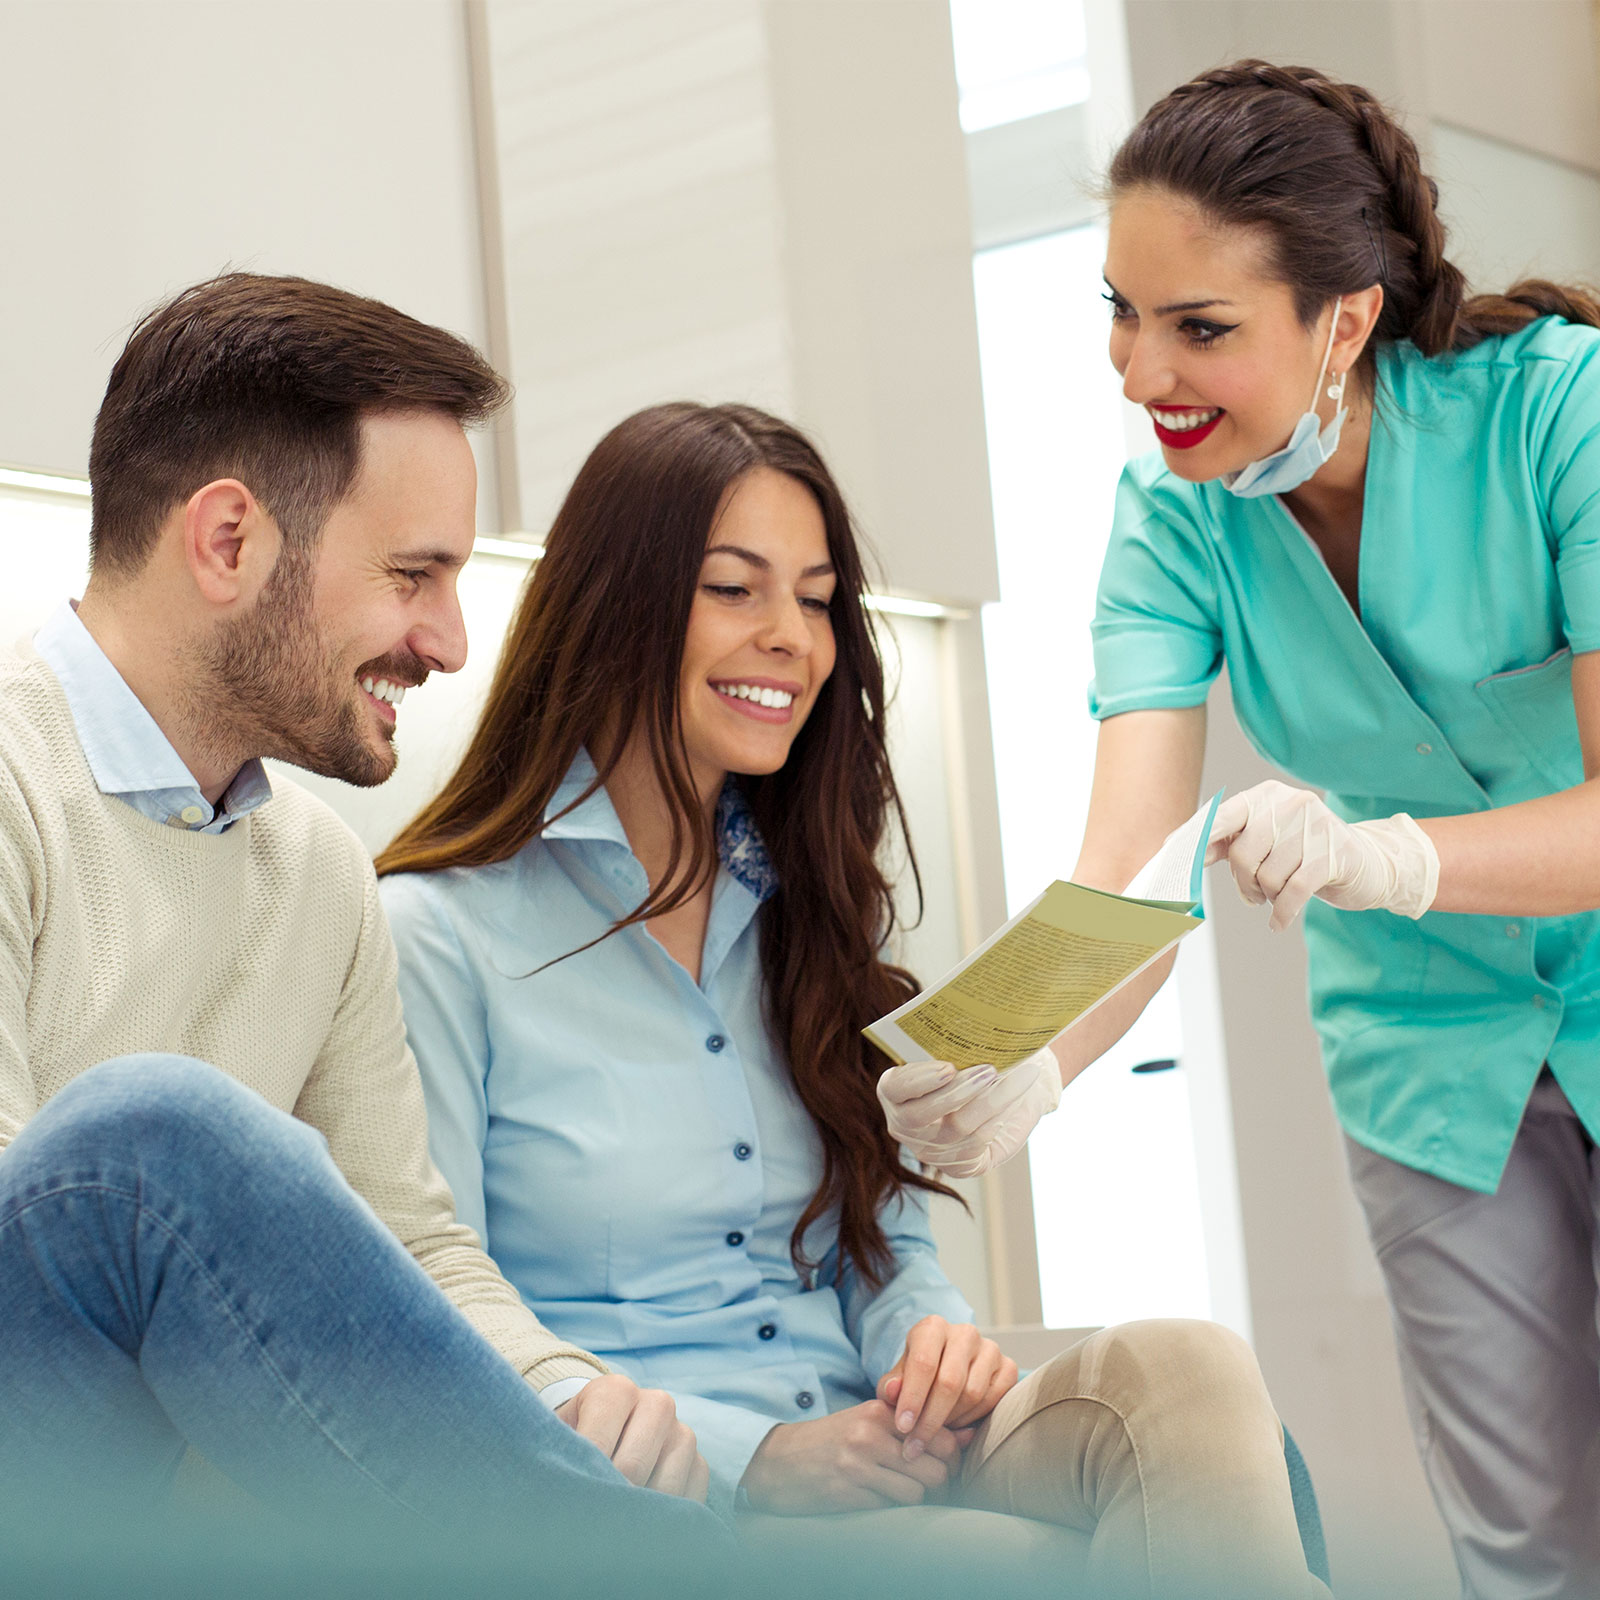 Un asistente dental explica las opciones del plan a una pareja.